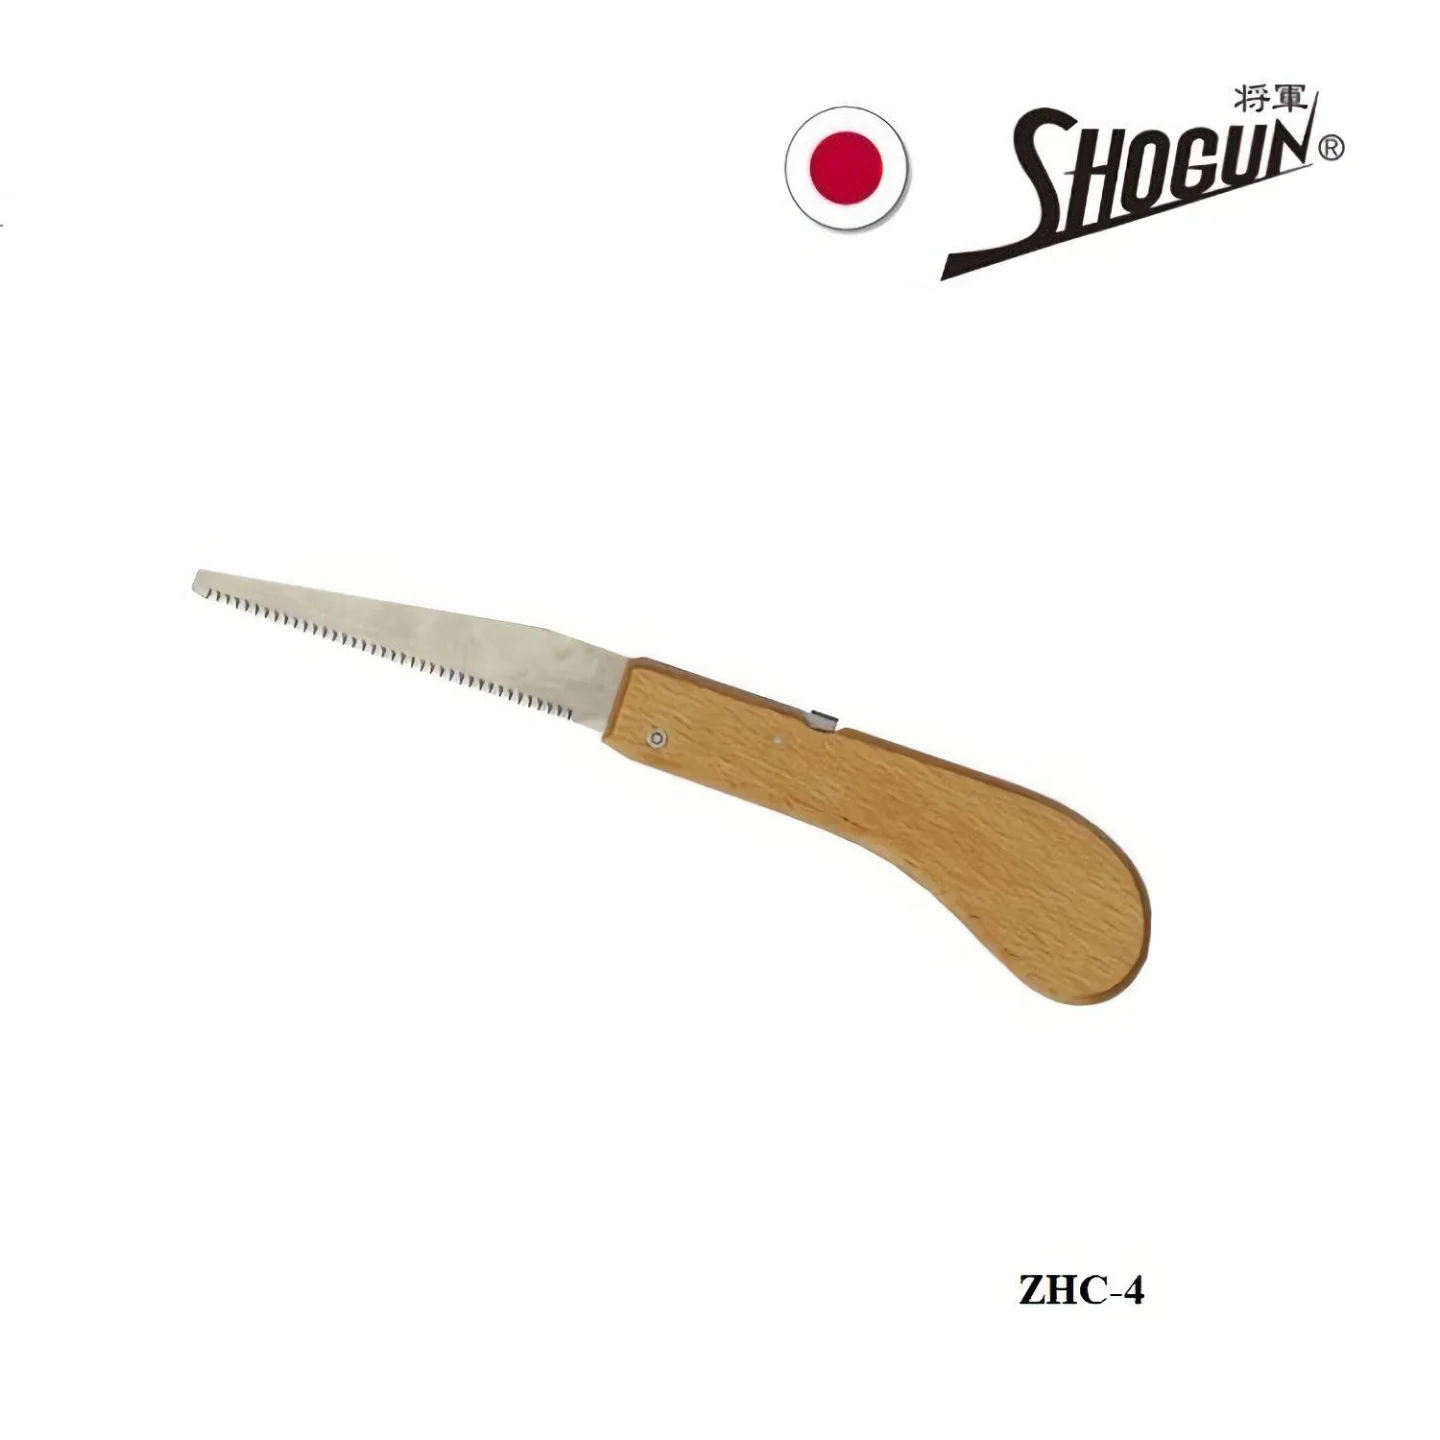 japanse-trekzaag-Shogun-100mm-zhc4.